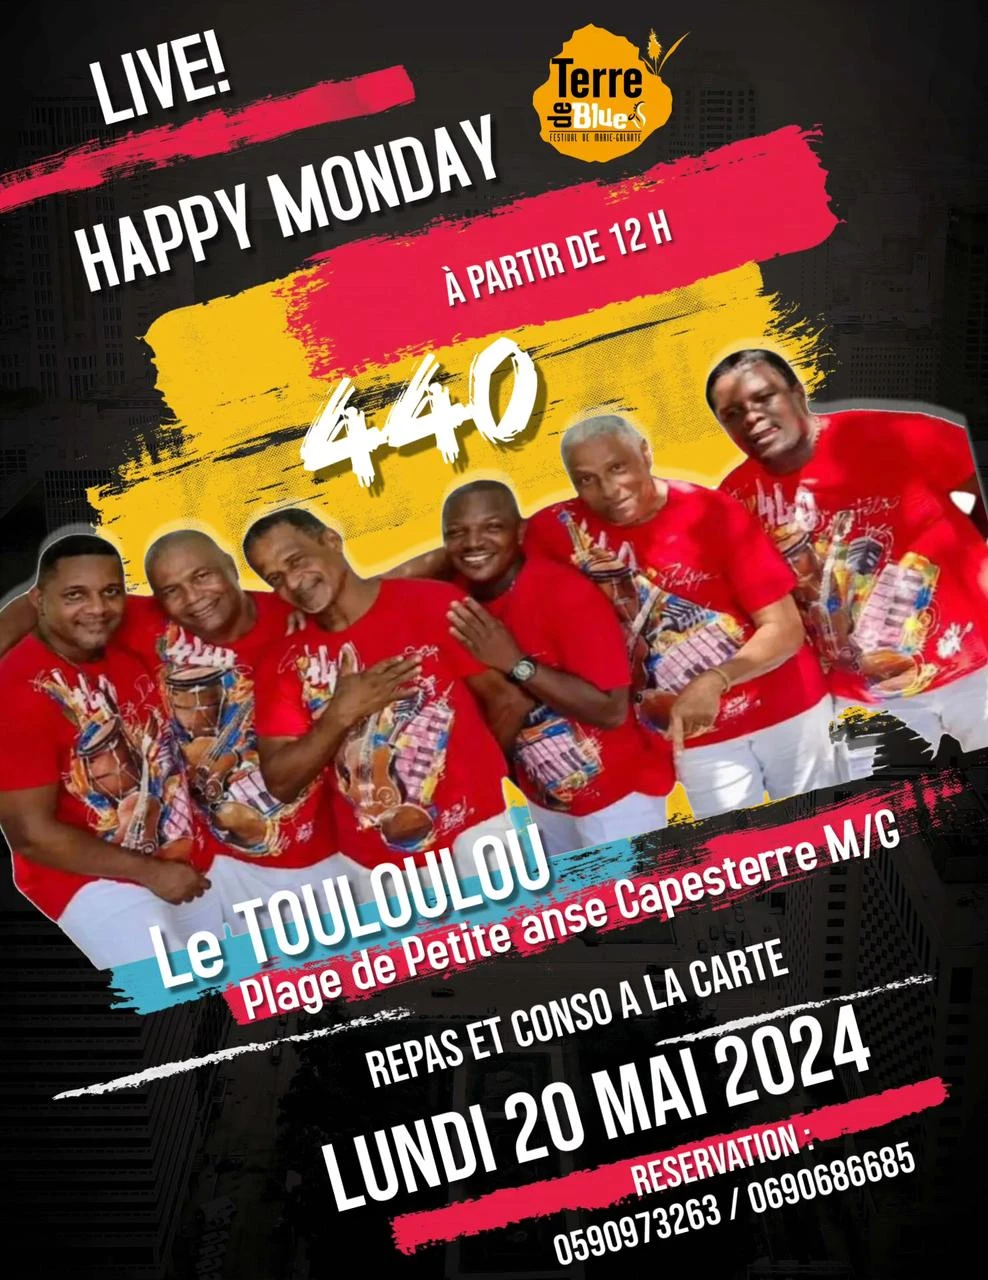 440 Live – Happy Monday au Touloulou